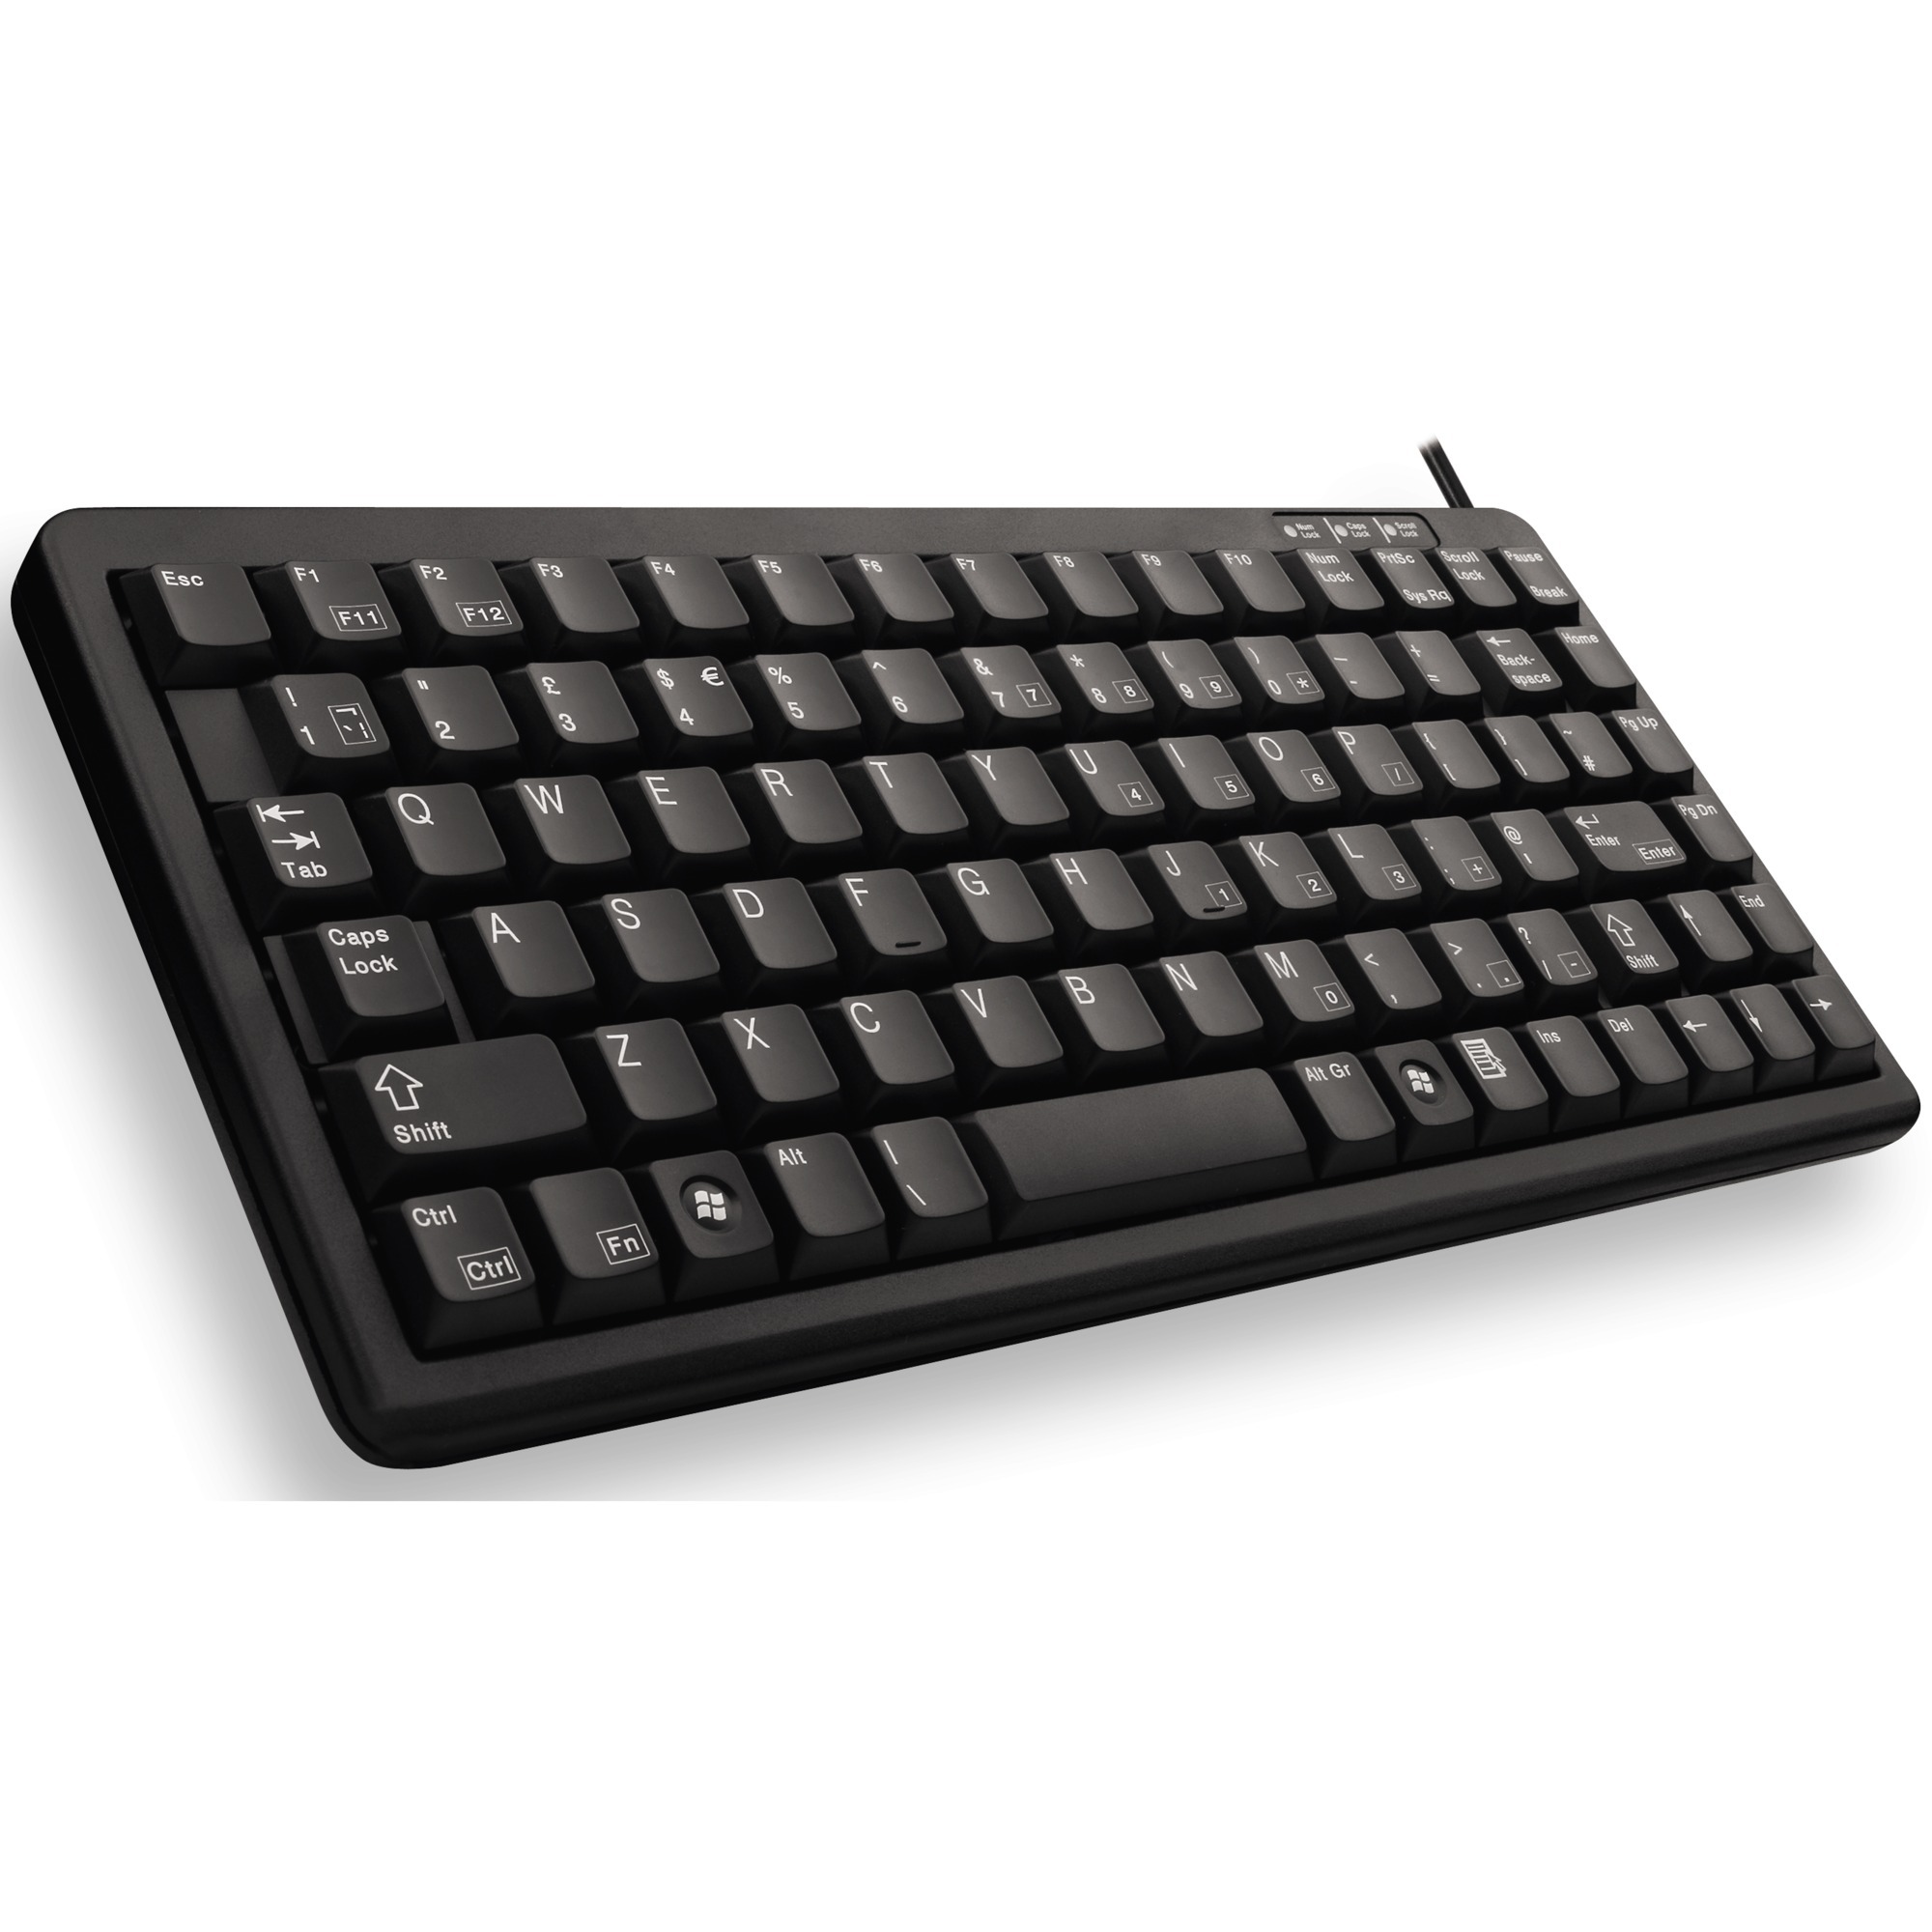 Image of Alternate - Compact-Keyboard G84-4100, Tastatur online einkaufen bei Alternate